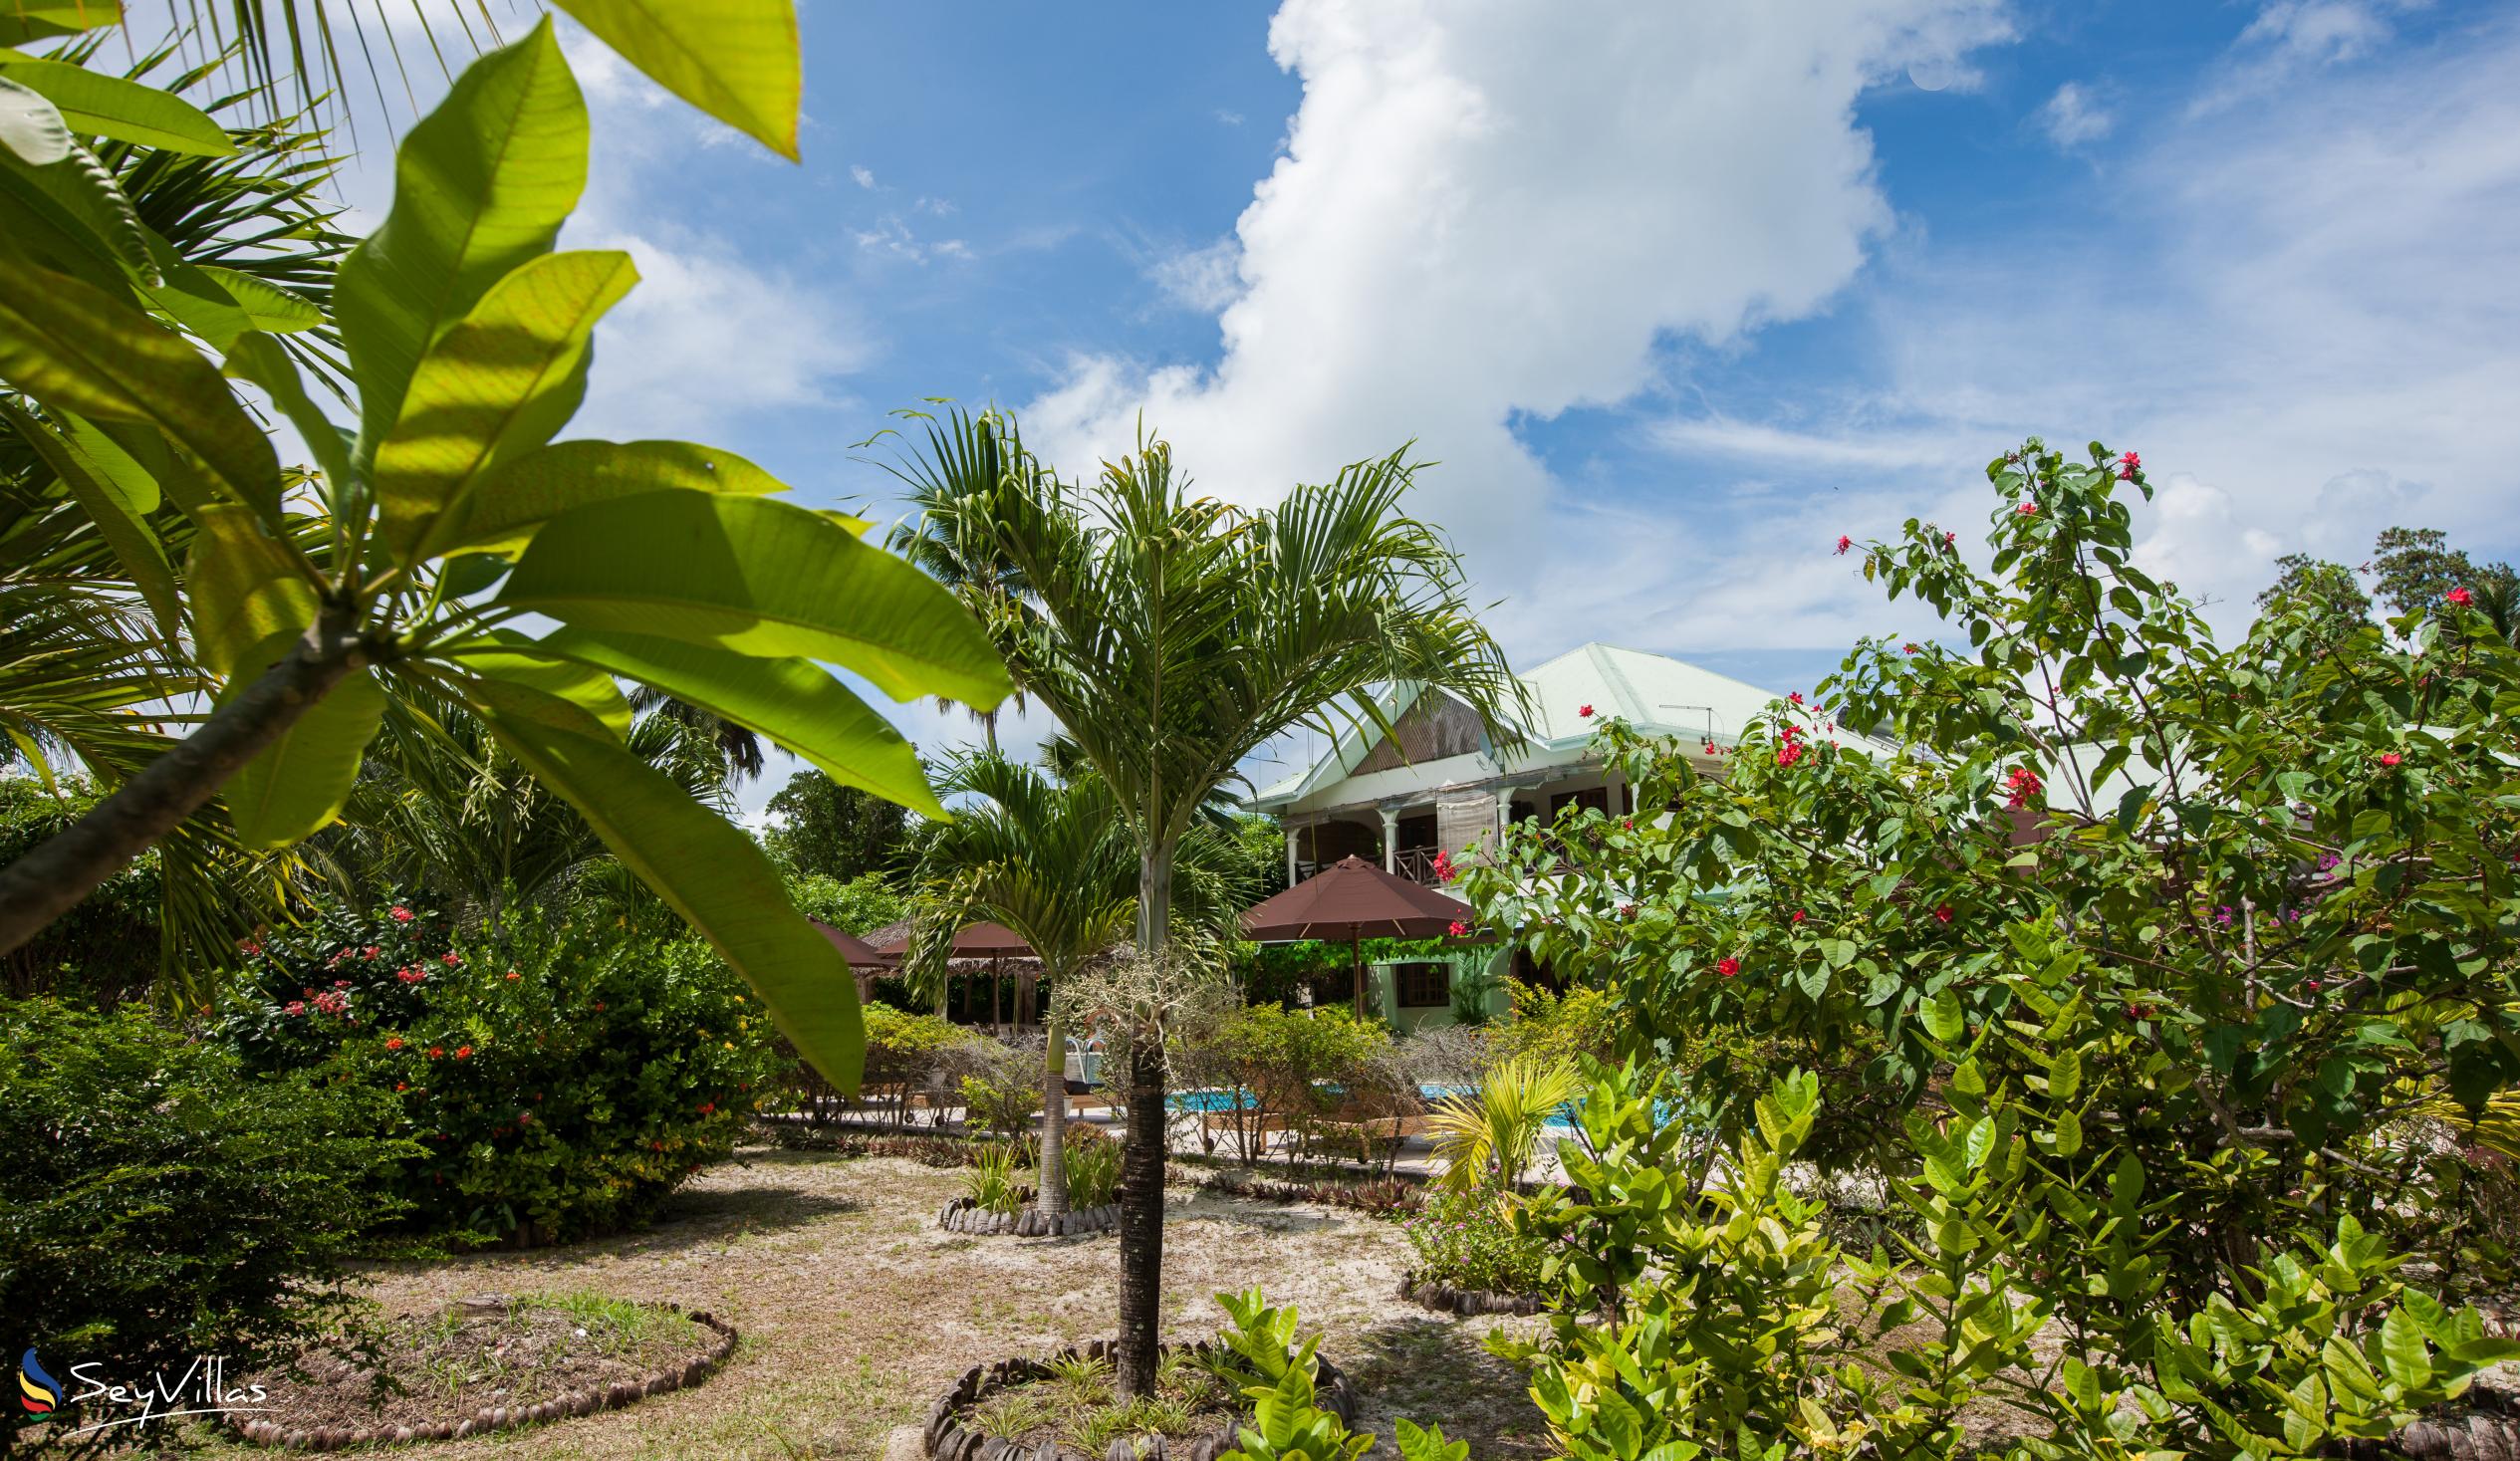 Foto 12: Villa de Cerf - Esterno - Cerf Island (Seychelles)